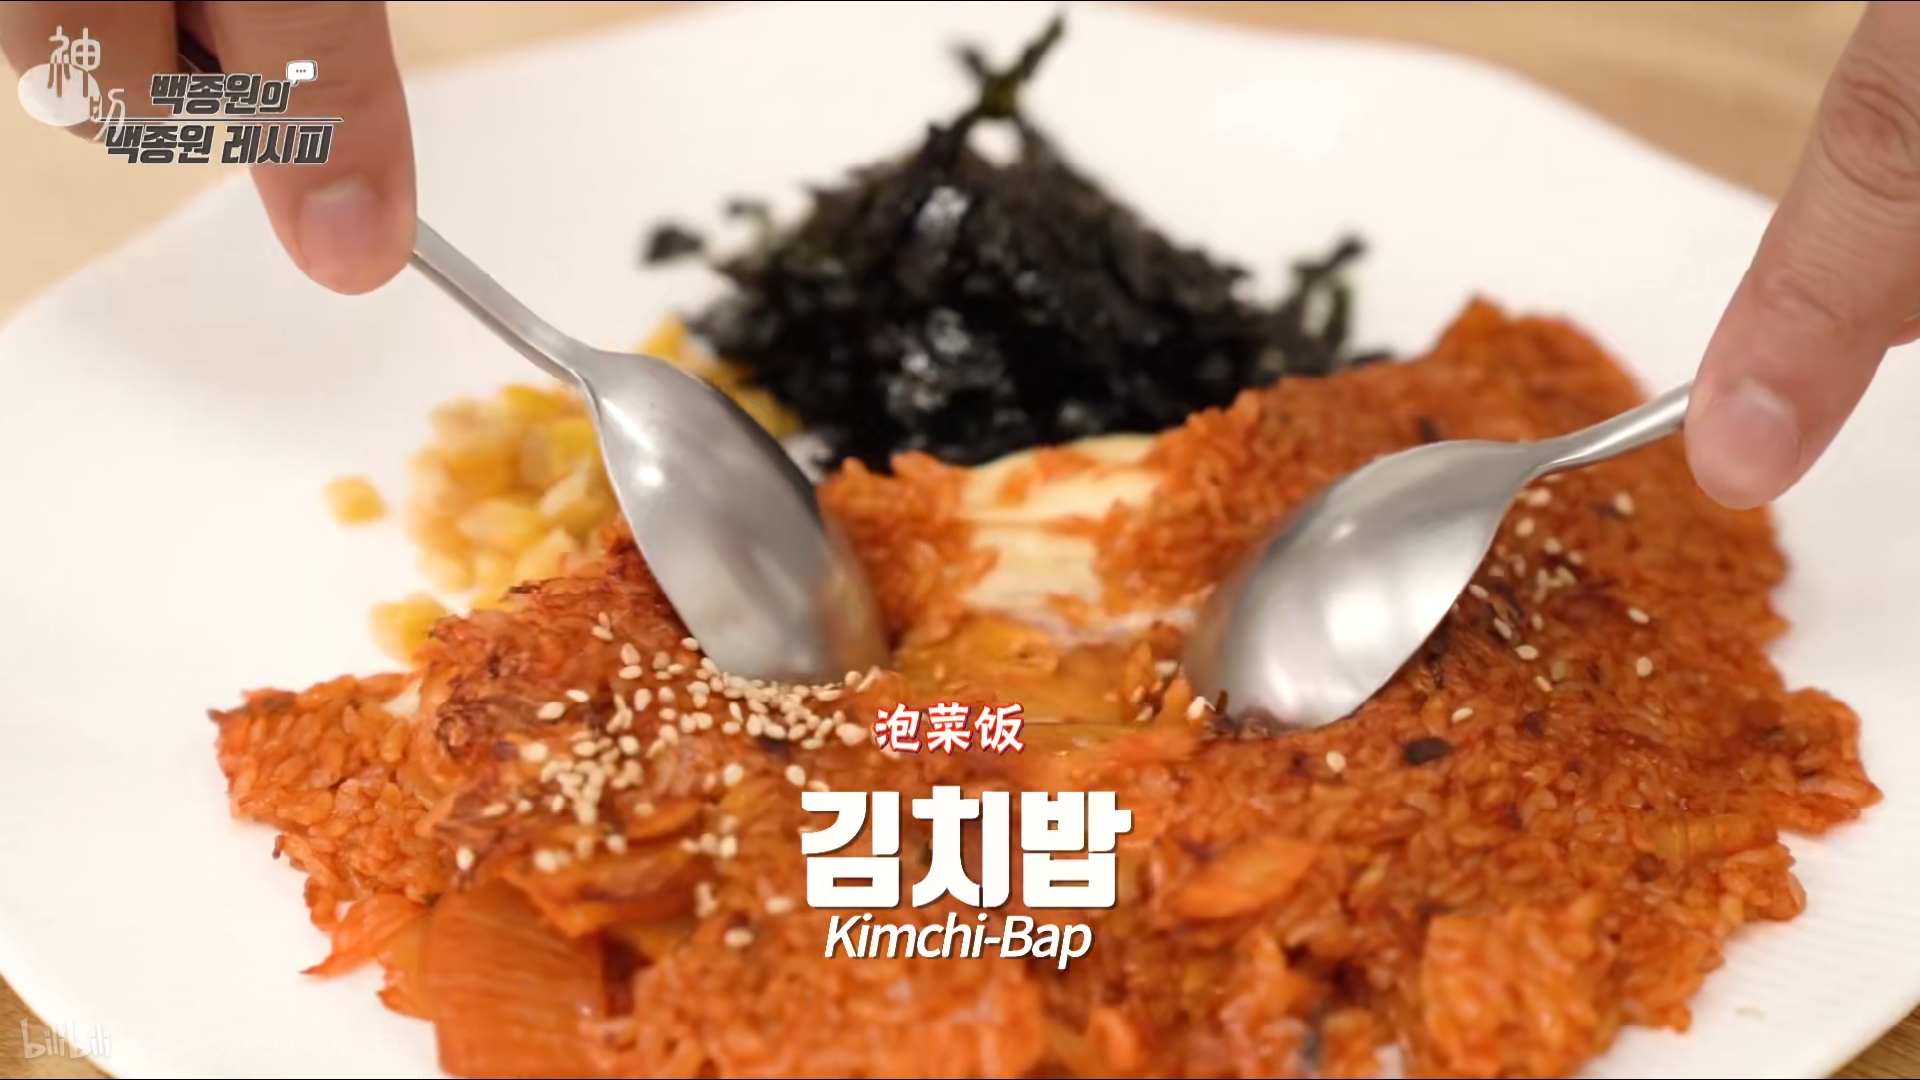 姜食堂2 P.O Kimchi-Bap